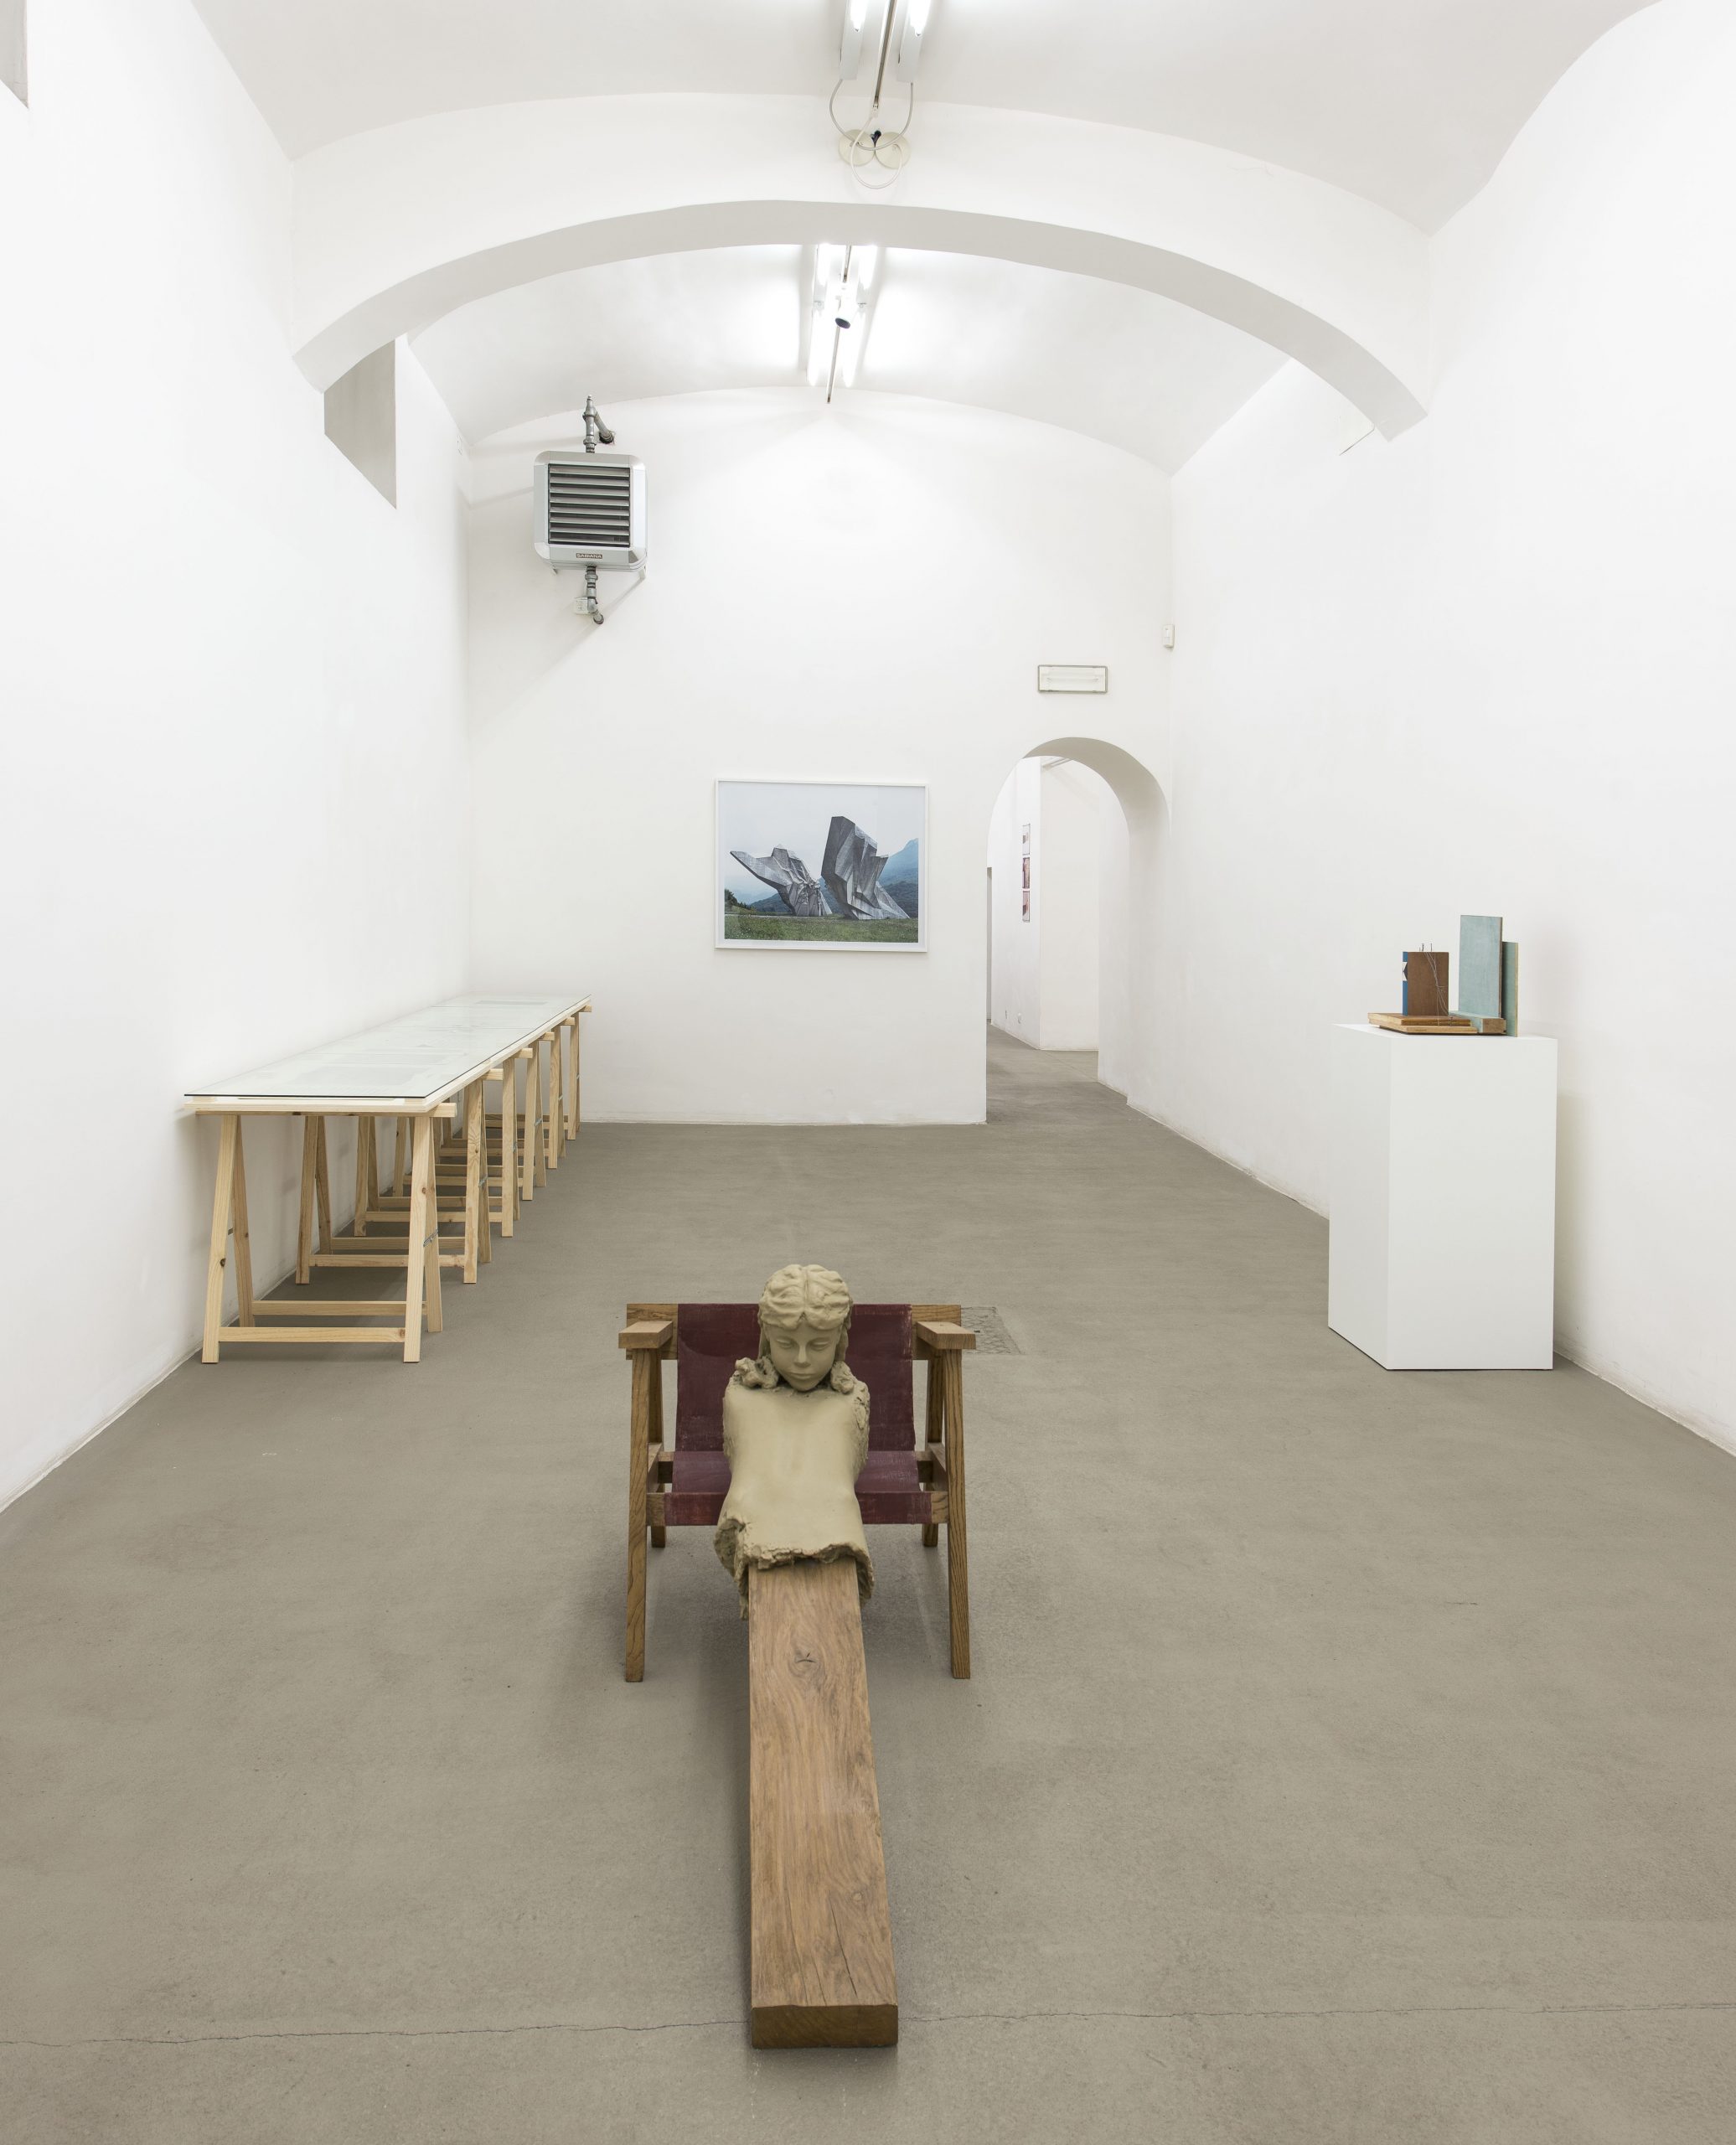 Roma Publications 1998 – 2014. Installation view at Fondazione Giuliani, photo by Giorgio Benni